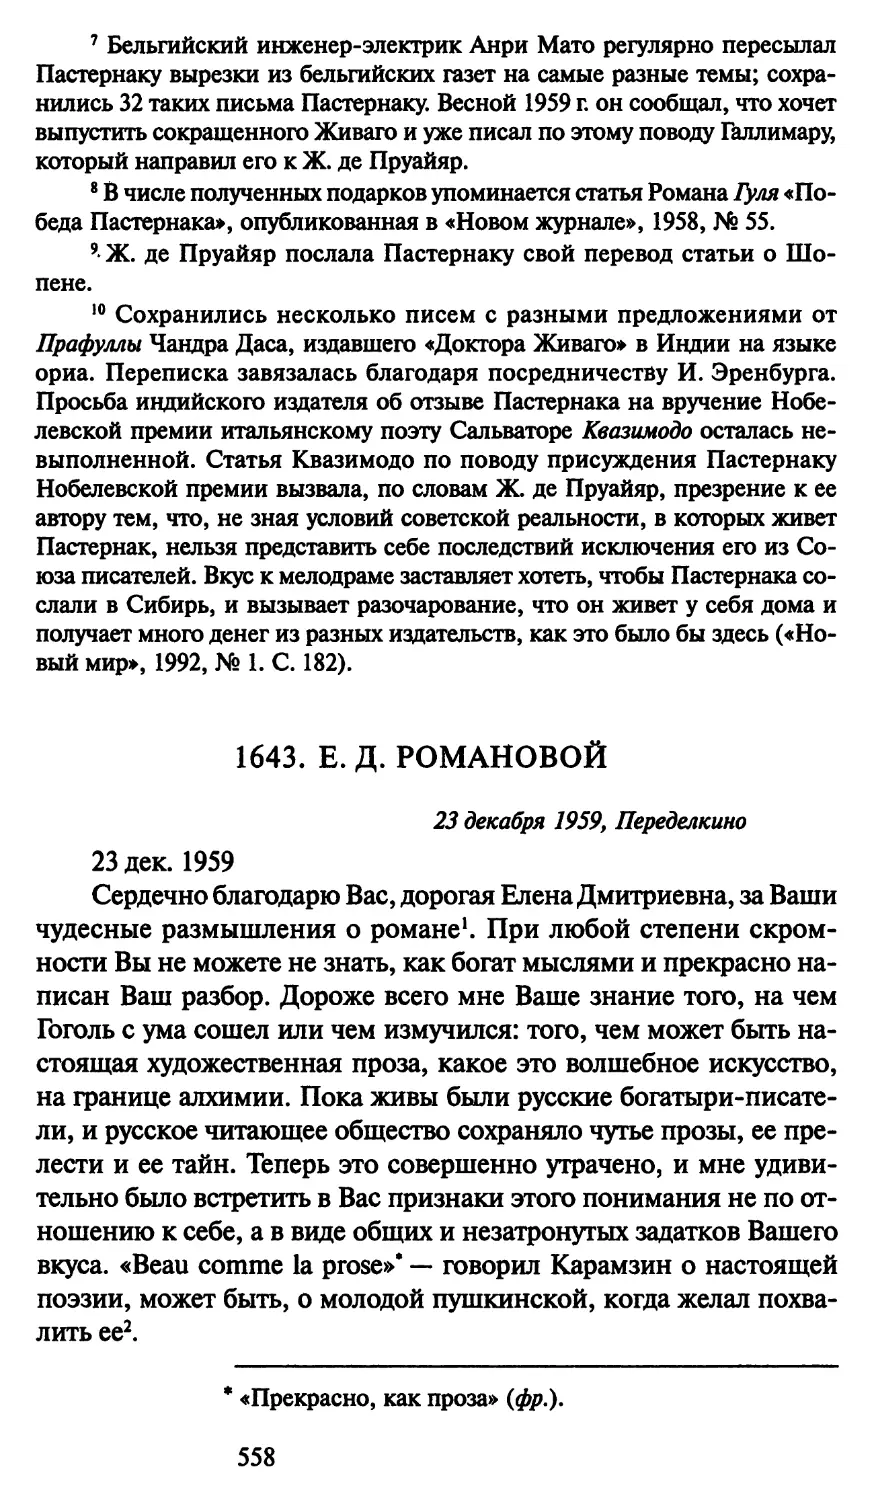 1643. Е. Д. Романовой 23 декабря 1959